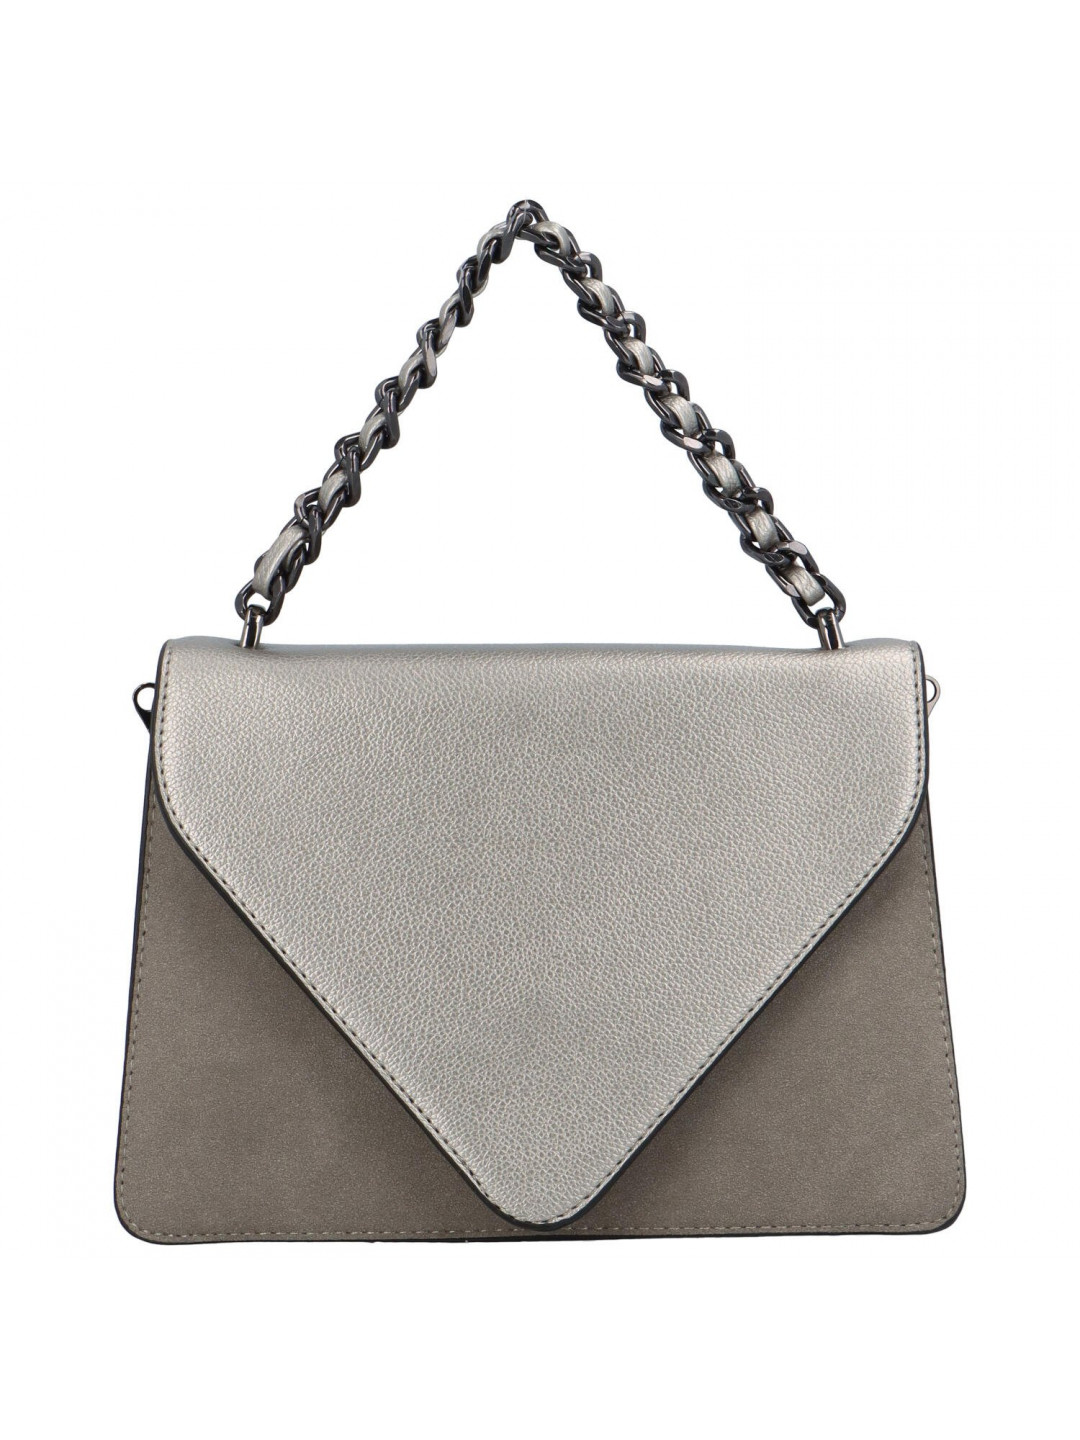 Luxusní dámská koženková kabelka Trinida stříbrná